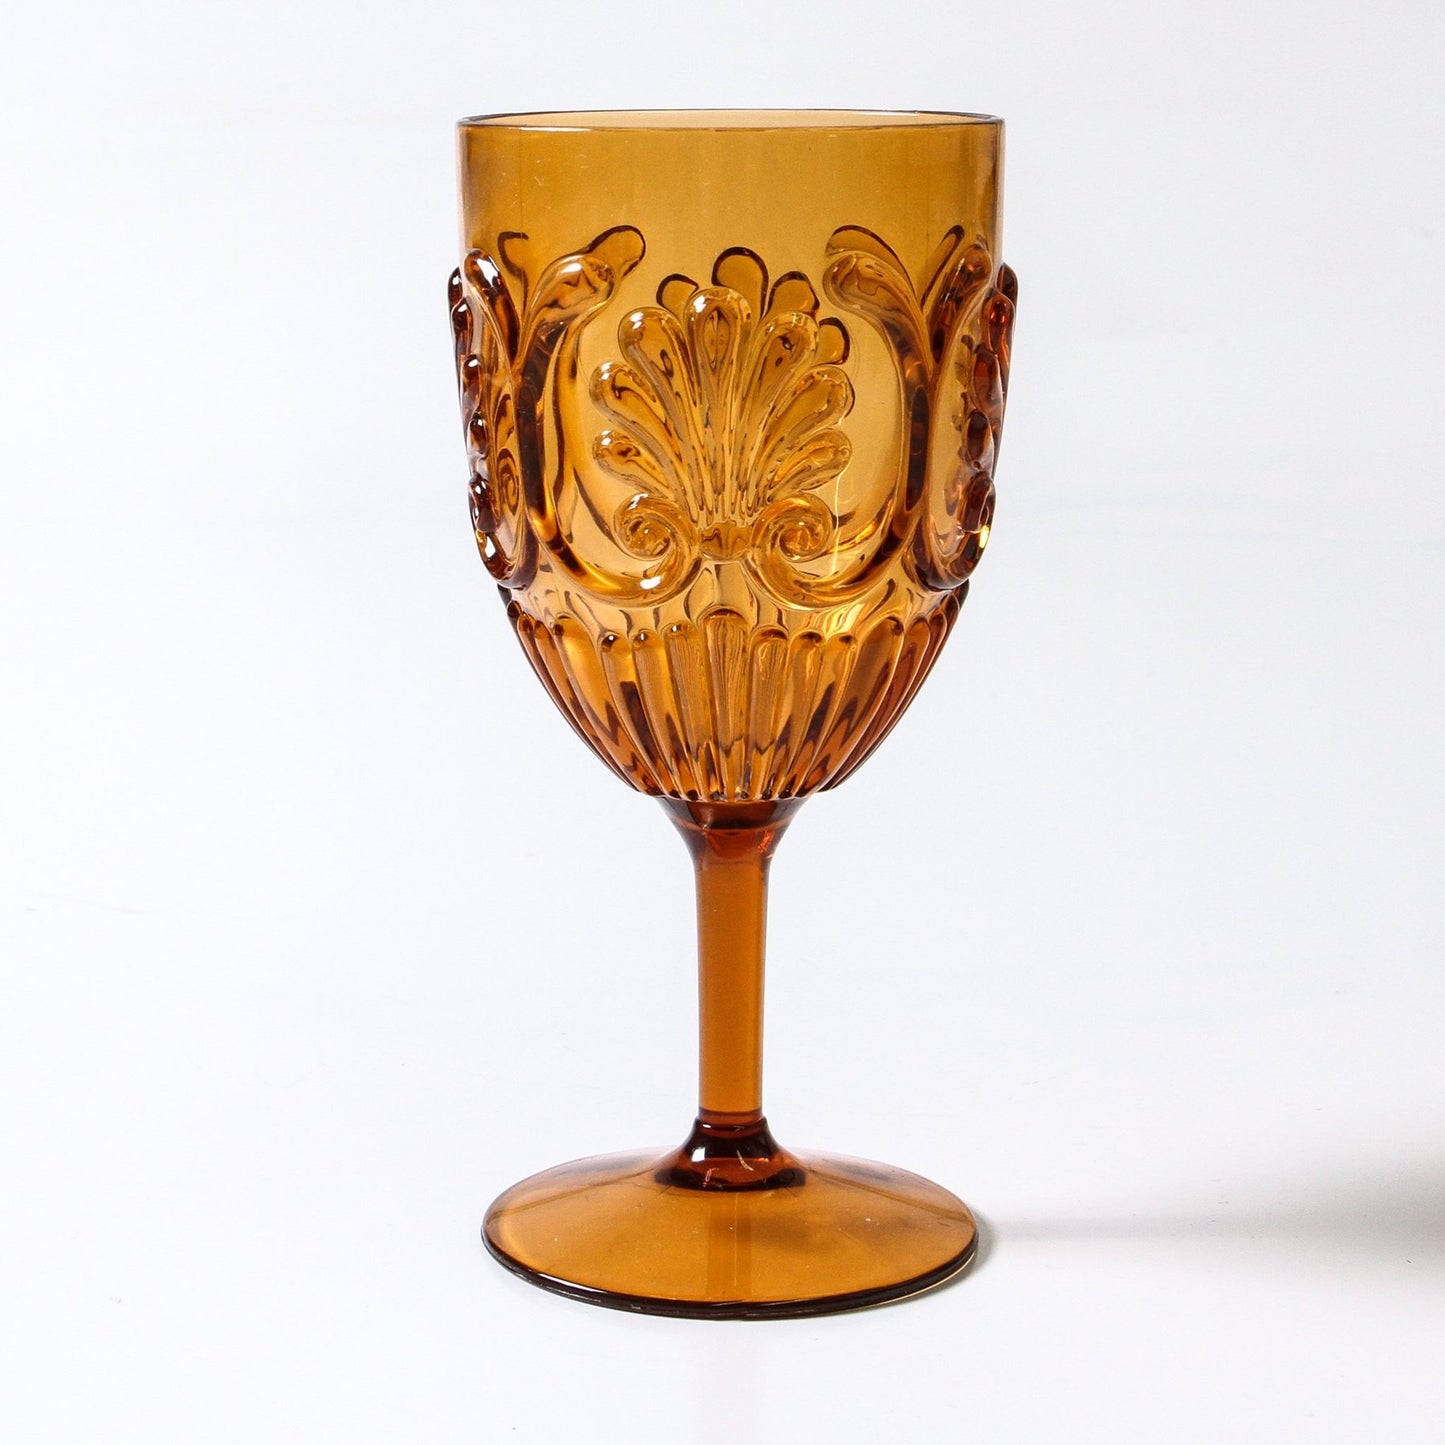 Flemington Acrylic Goblet - Amber